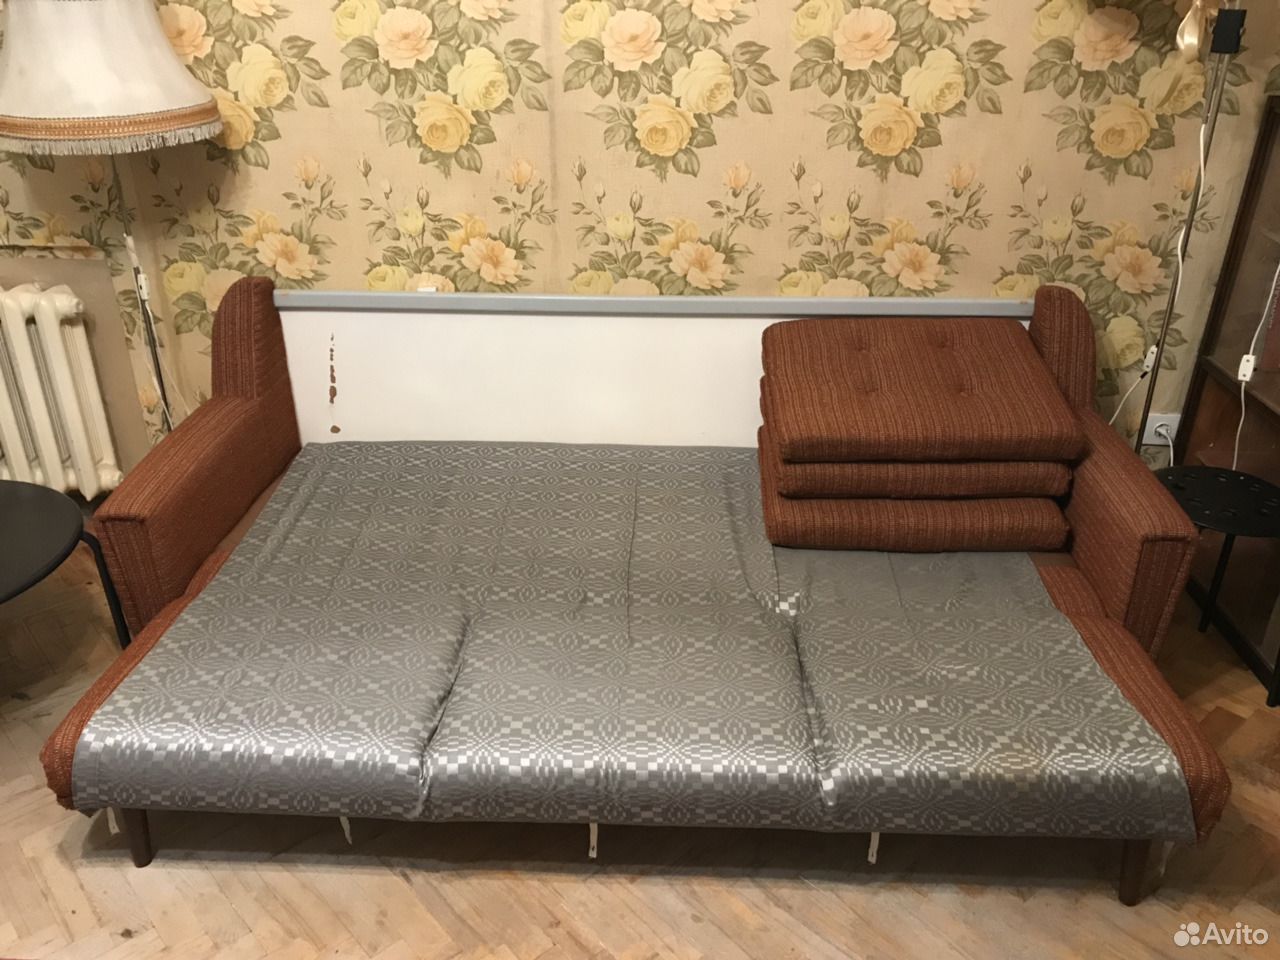 Кровать-трансформер с диваном даром